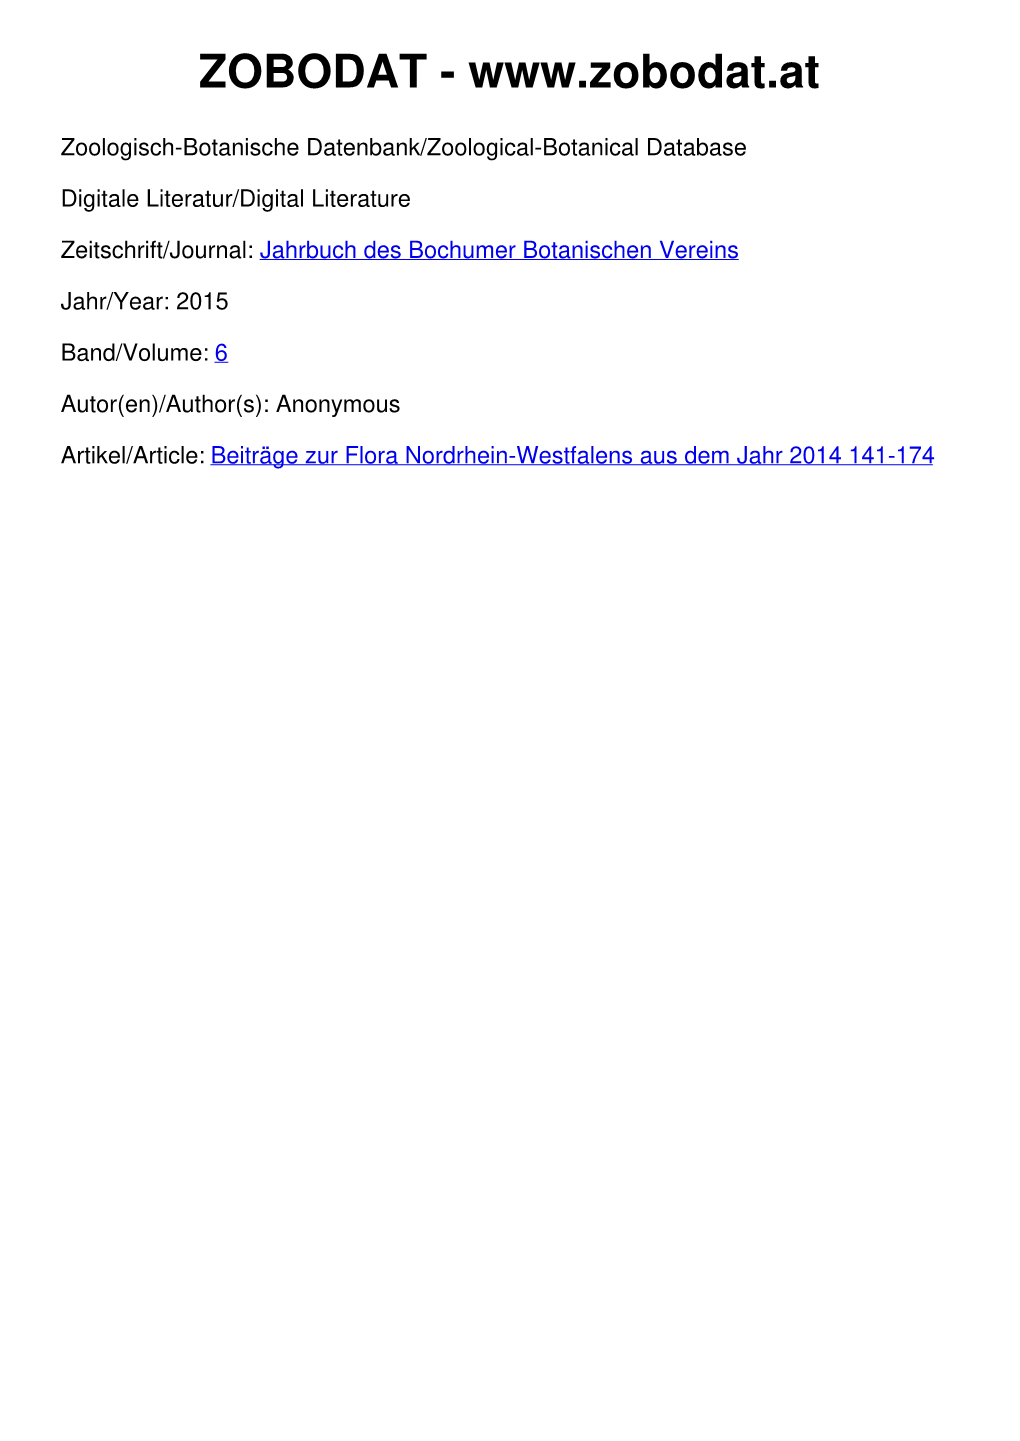 Beiträge Zur Flora Nordrhein-Westfalens Aus Dem Jahr 2014 141-174 © Bochumer Botanischer Verein E.V